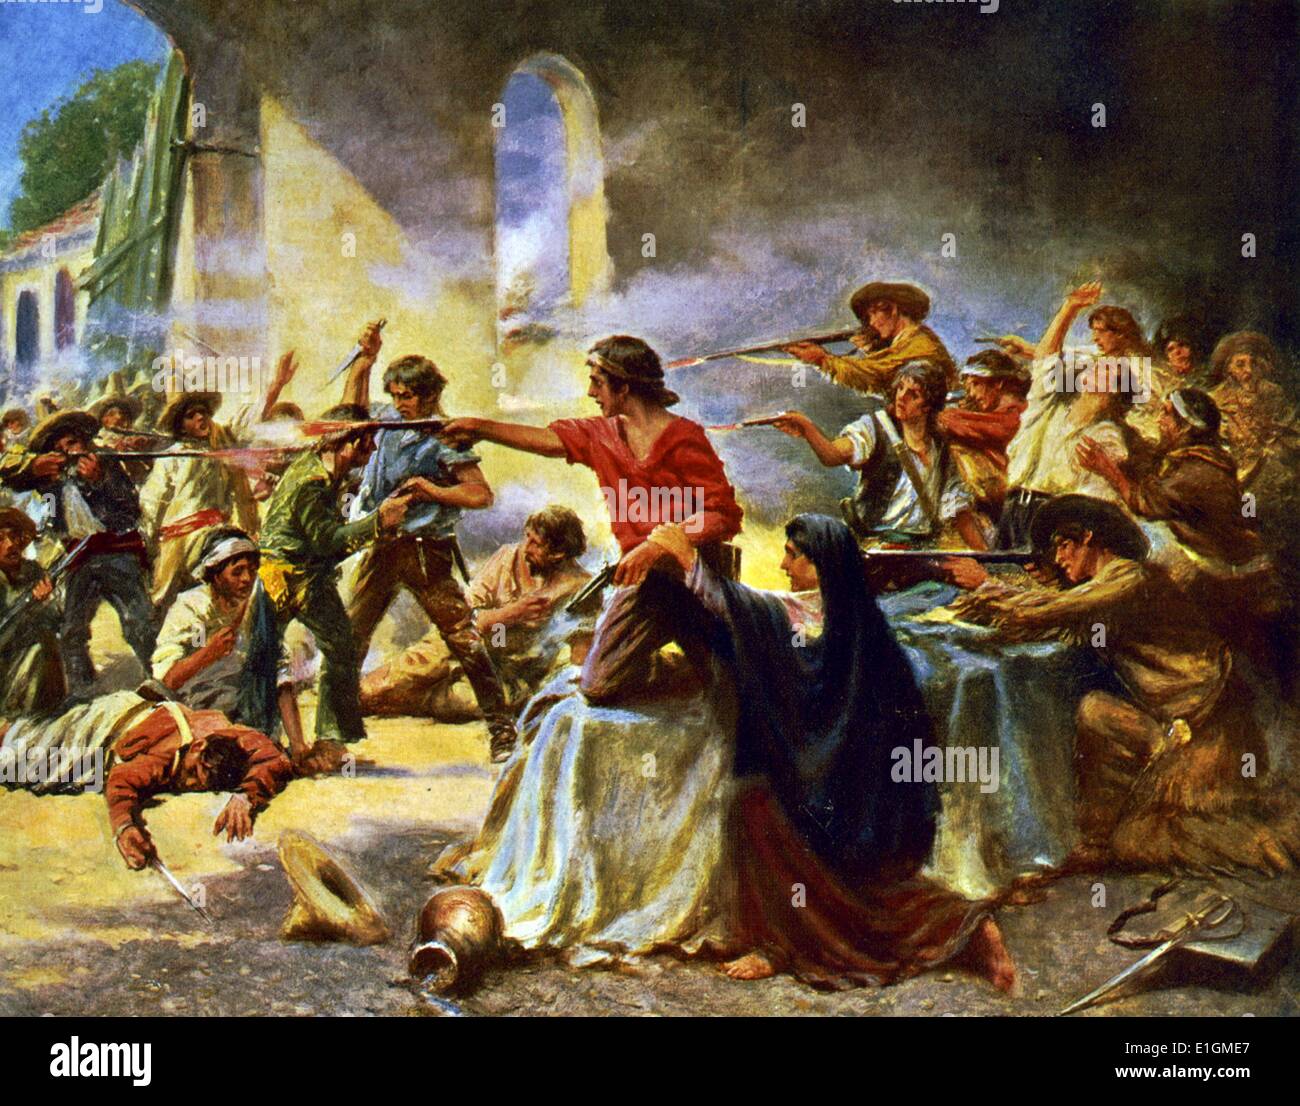 Ein zentrales Ereignis in der Texas Revolution. Nach einer 13-tägigen Belagerung, Mexikanischen Truppen unter Präsident General Antonio López de Santa Anna startete einen Angriff auf die Alamo Mission in der Nähe von San Antonio de Béxar (moderne San Antonio, Texas, USA) Stockfoto